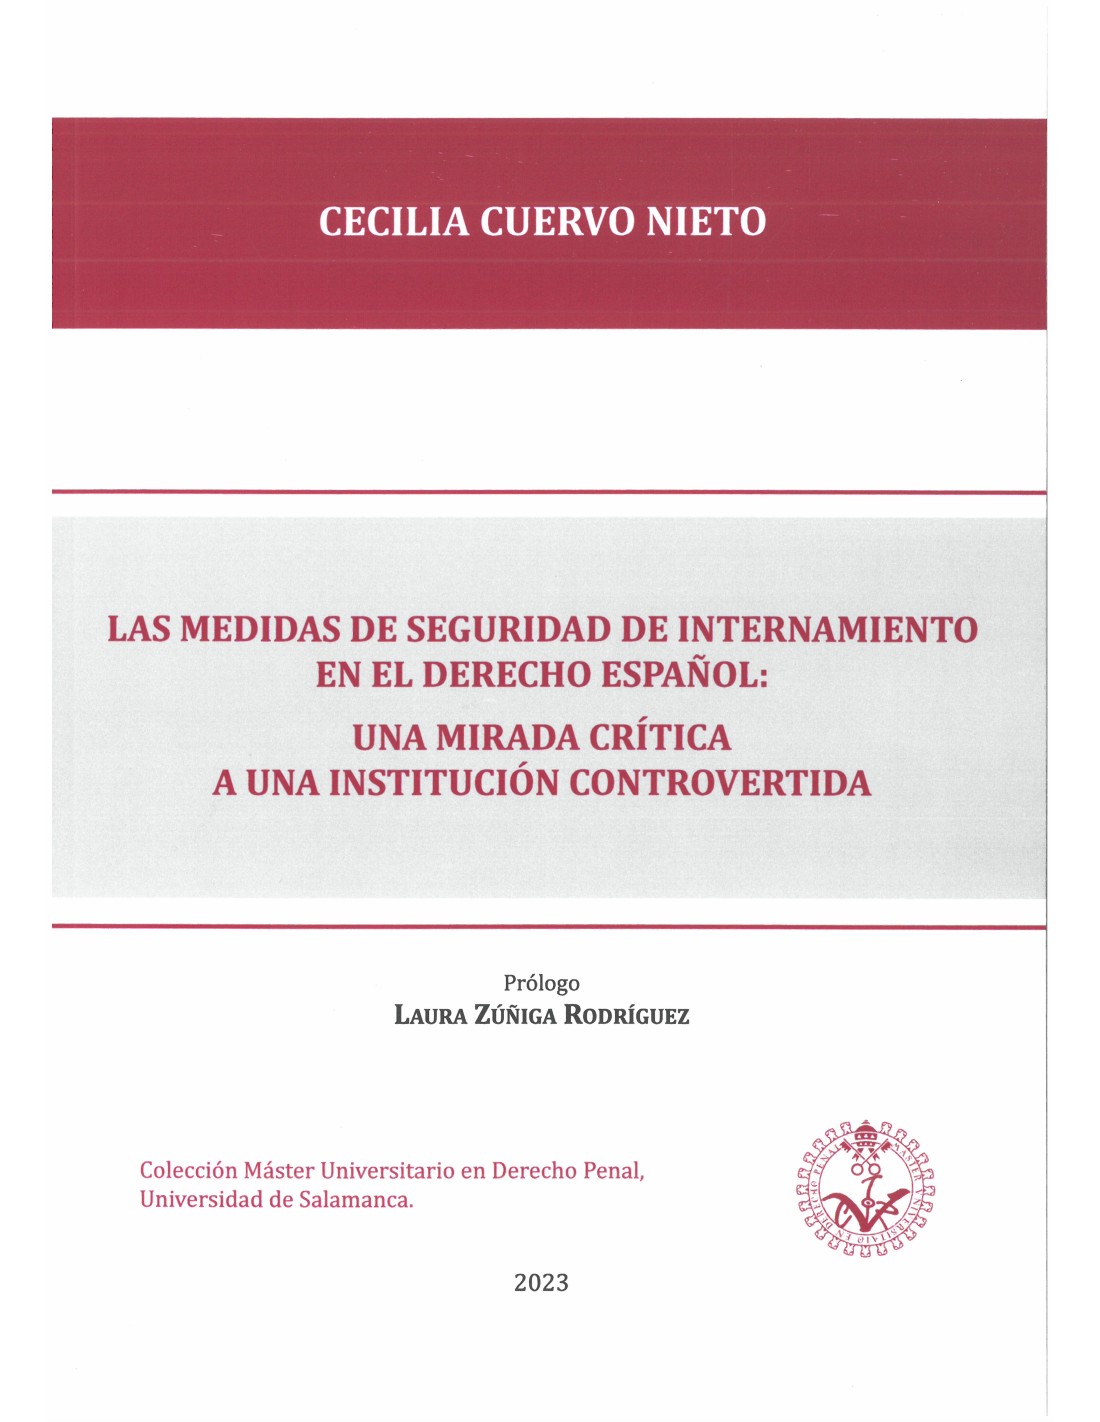 Imagen de portada del libro Las medidas de seguridad de internamiento en el derecho español